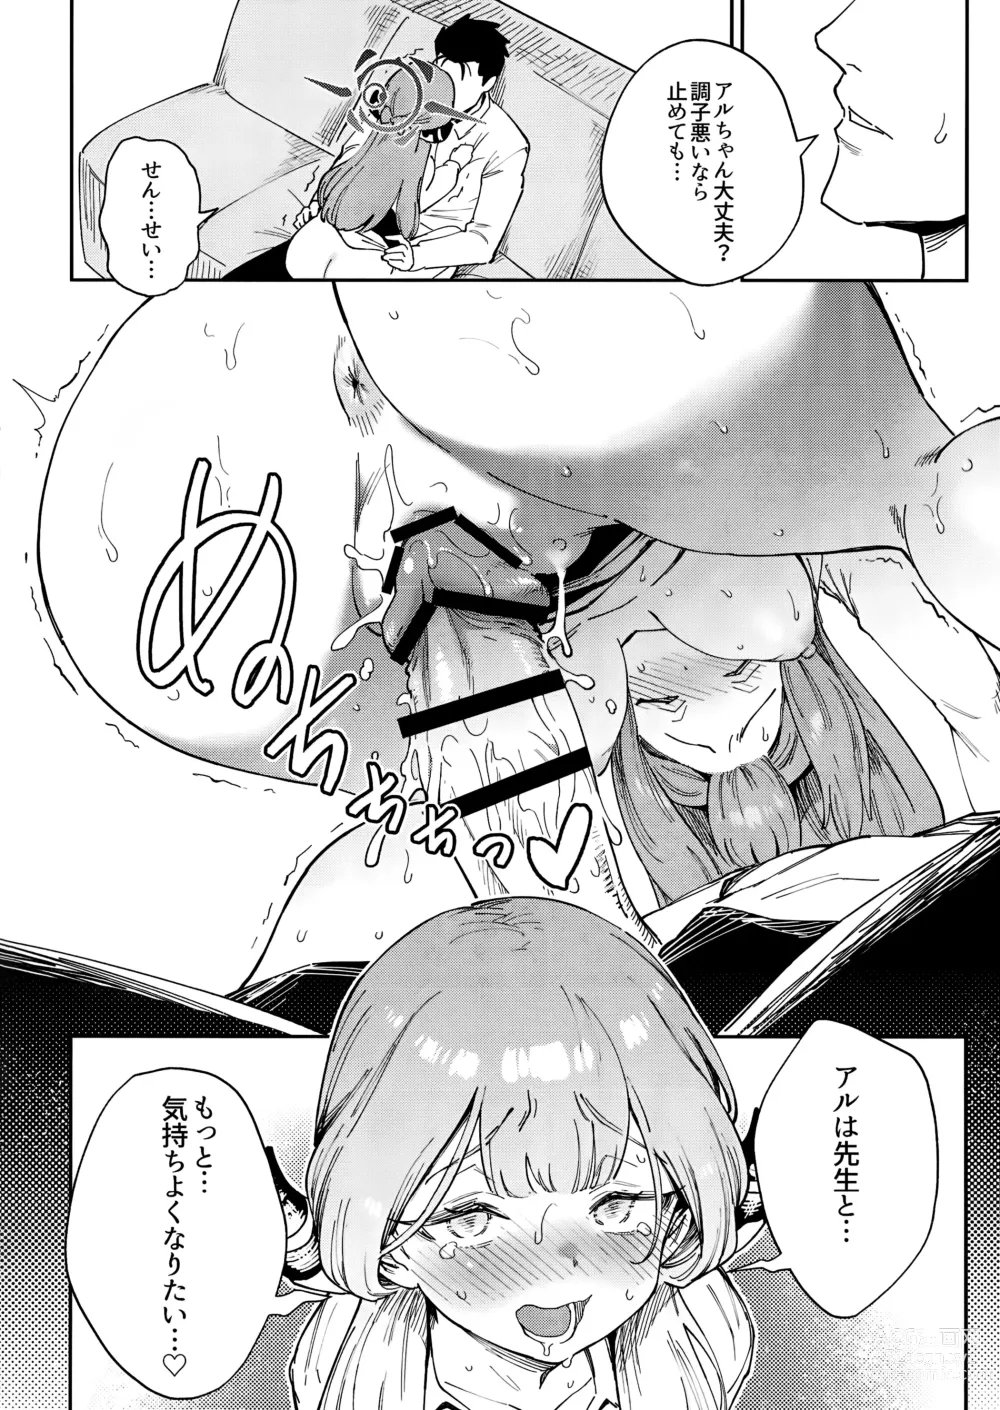 Page 18 of doujinshi Sensei to Seito no Kankei tte Konna ni mo Open nanoo!?